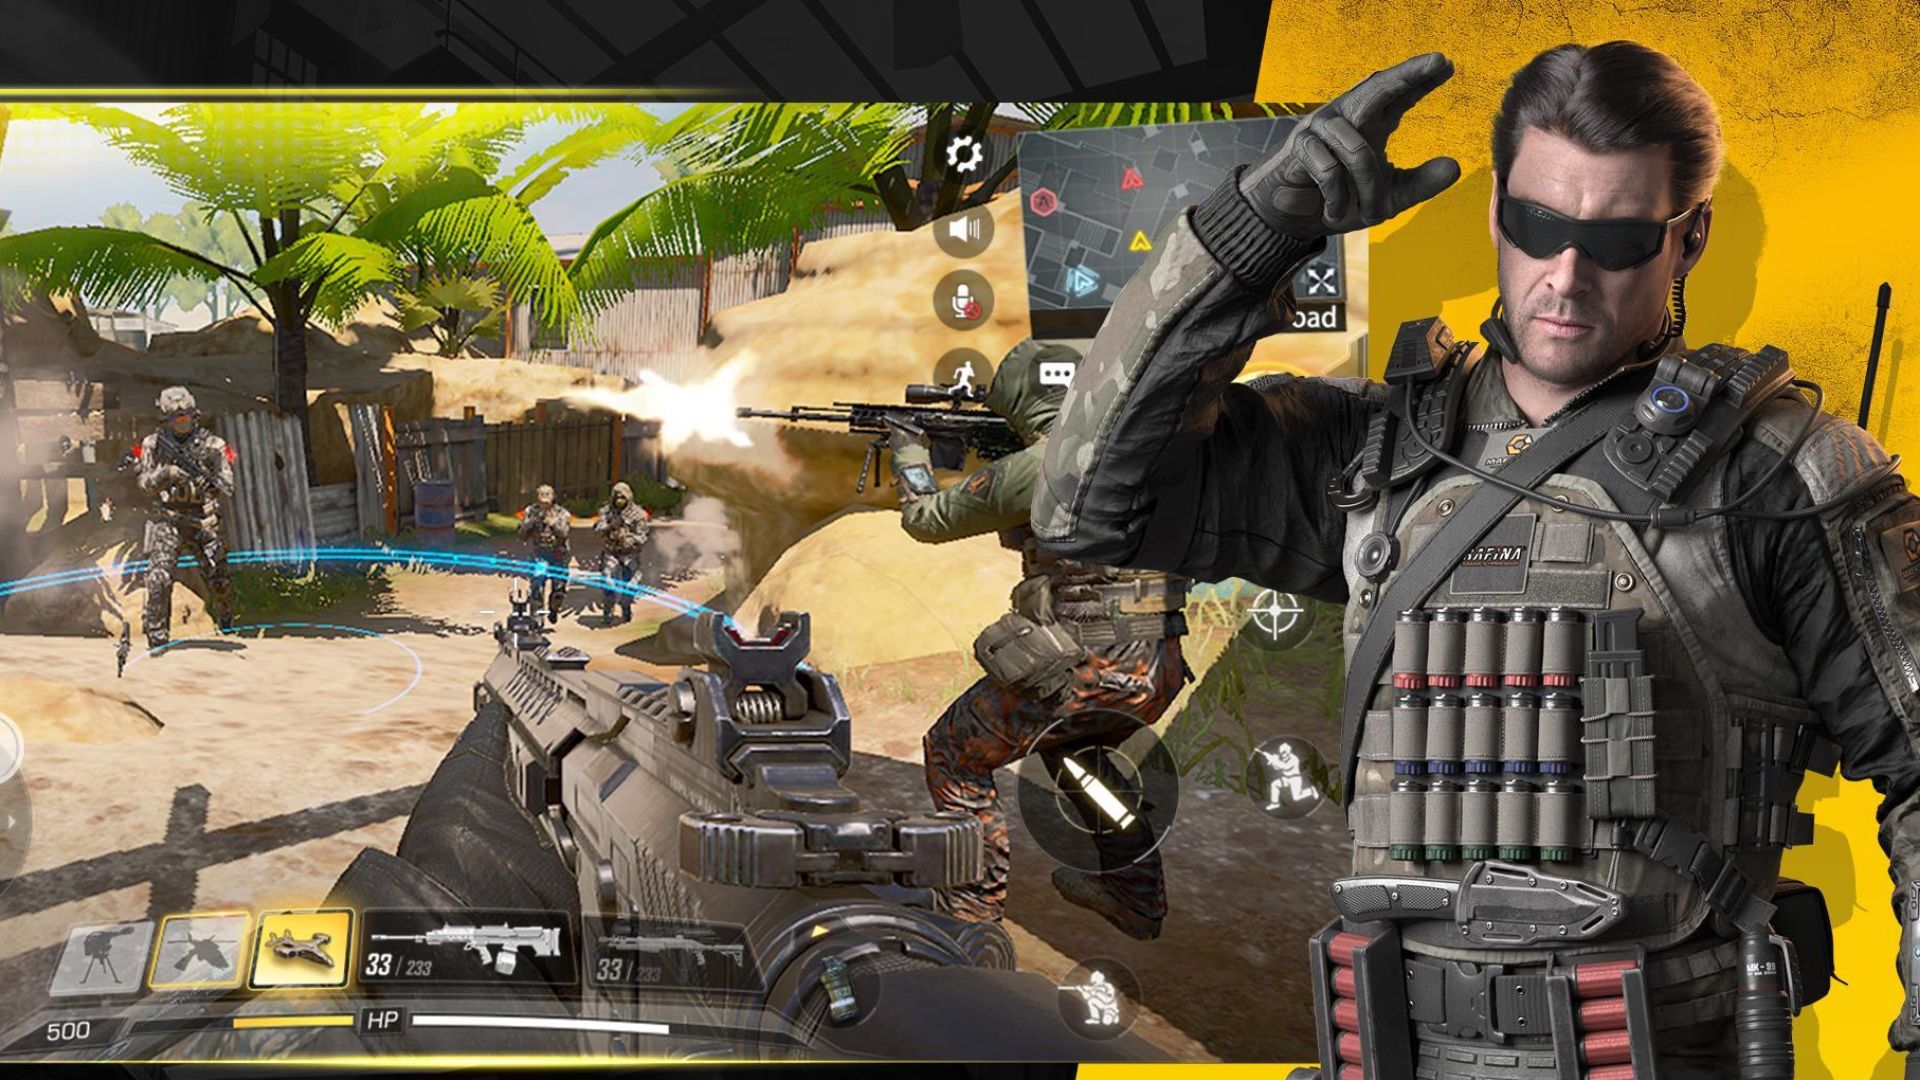 FPS ゲーム - Cod Mobile のスクリーンショットの隣で現代の兵士の鎧を着て敬礼している男性が、アサルトライフルを持っている男性の一人称視点を示しています。